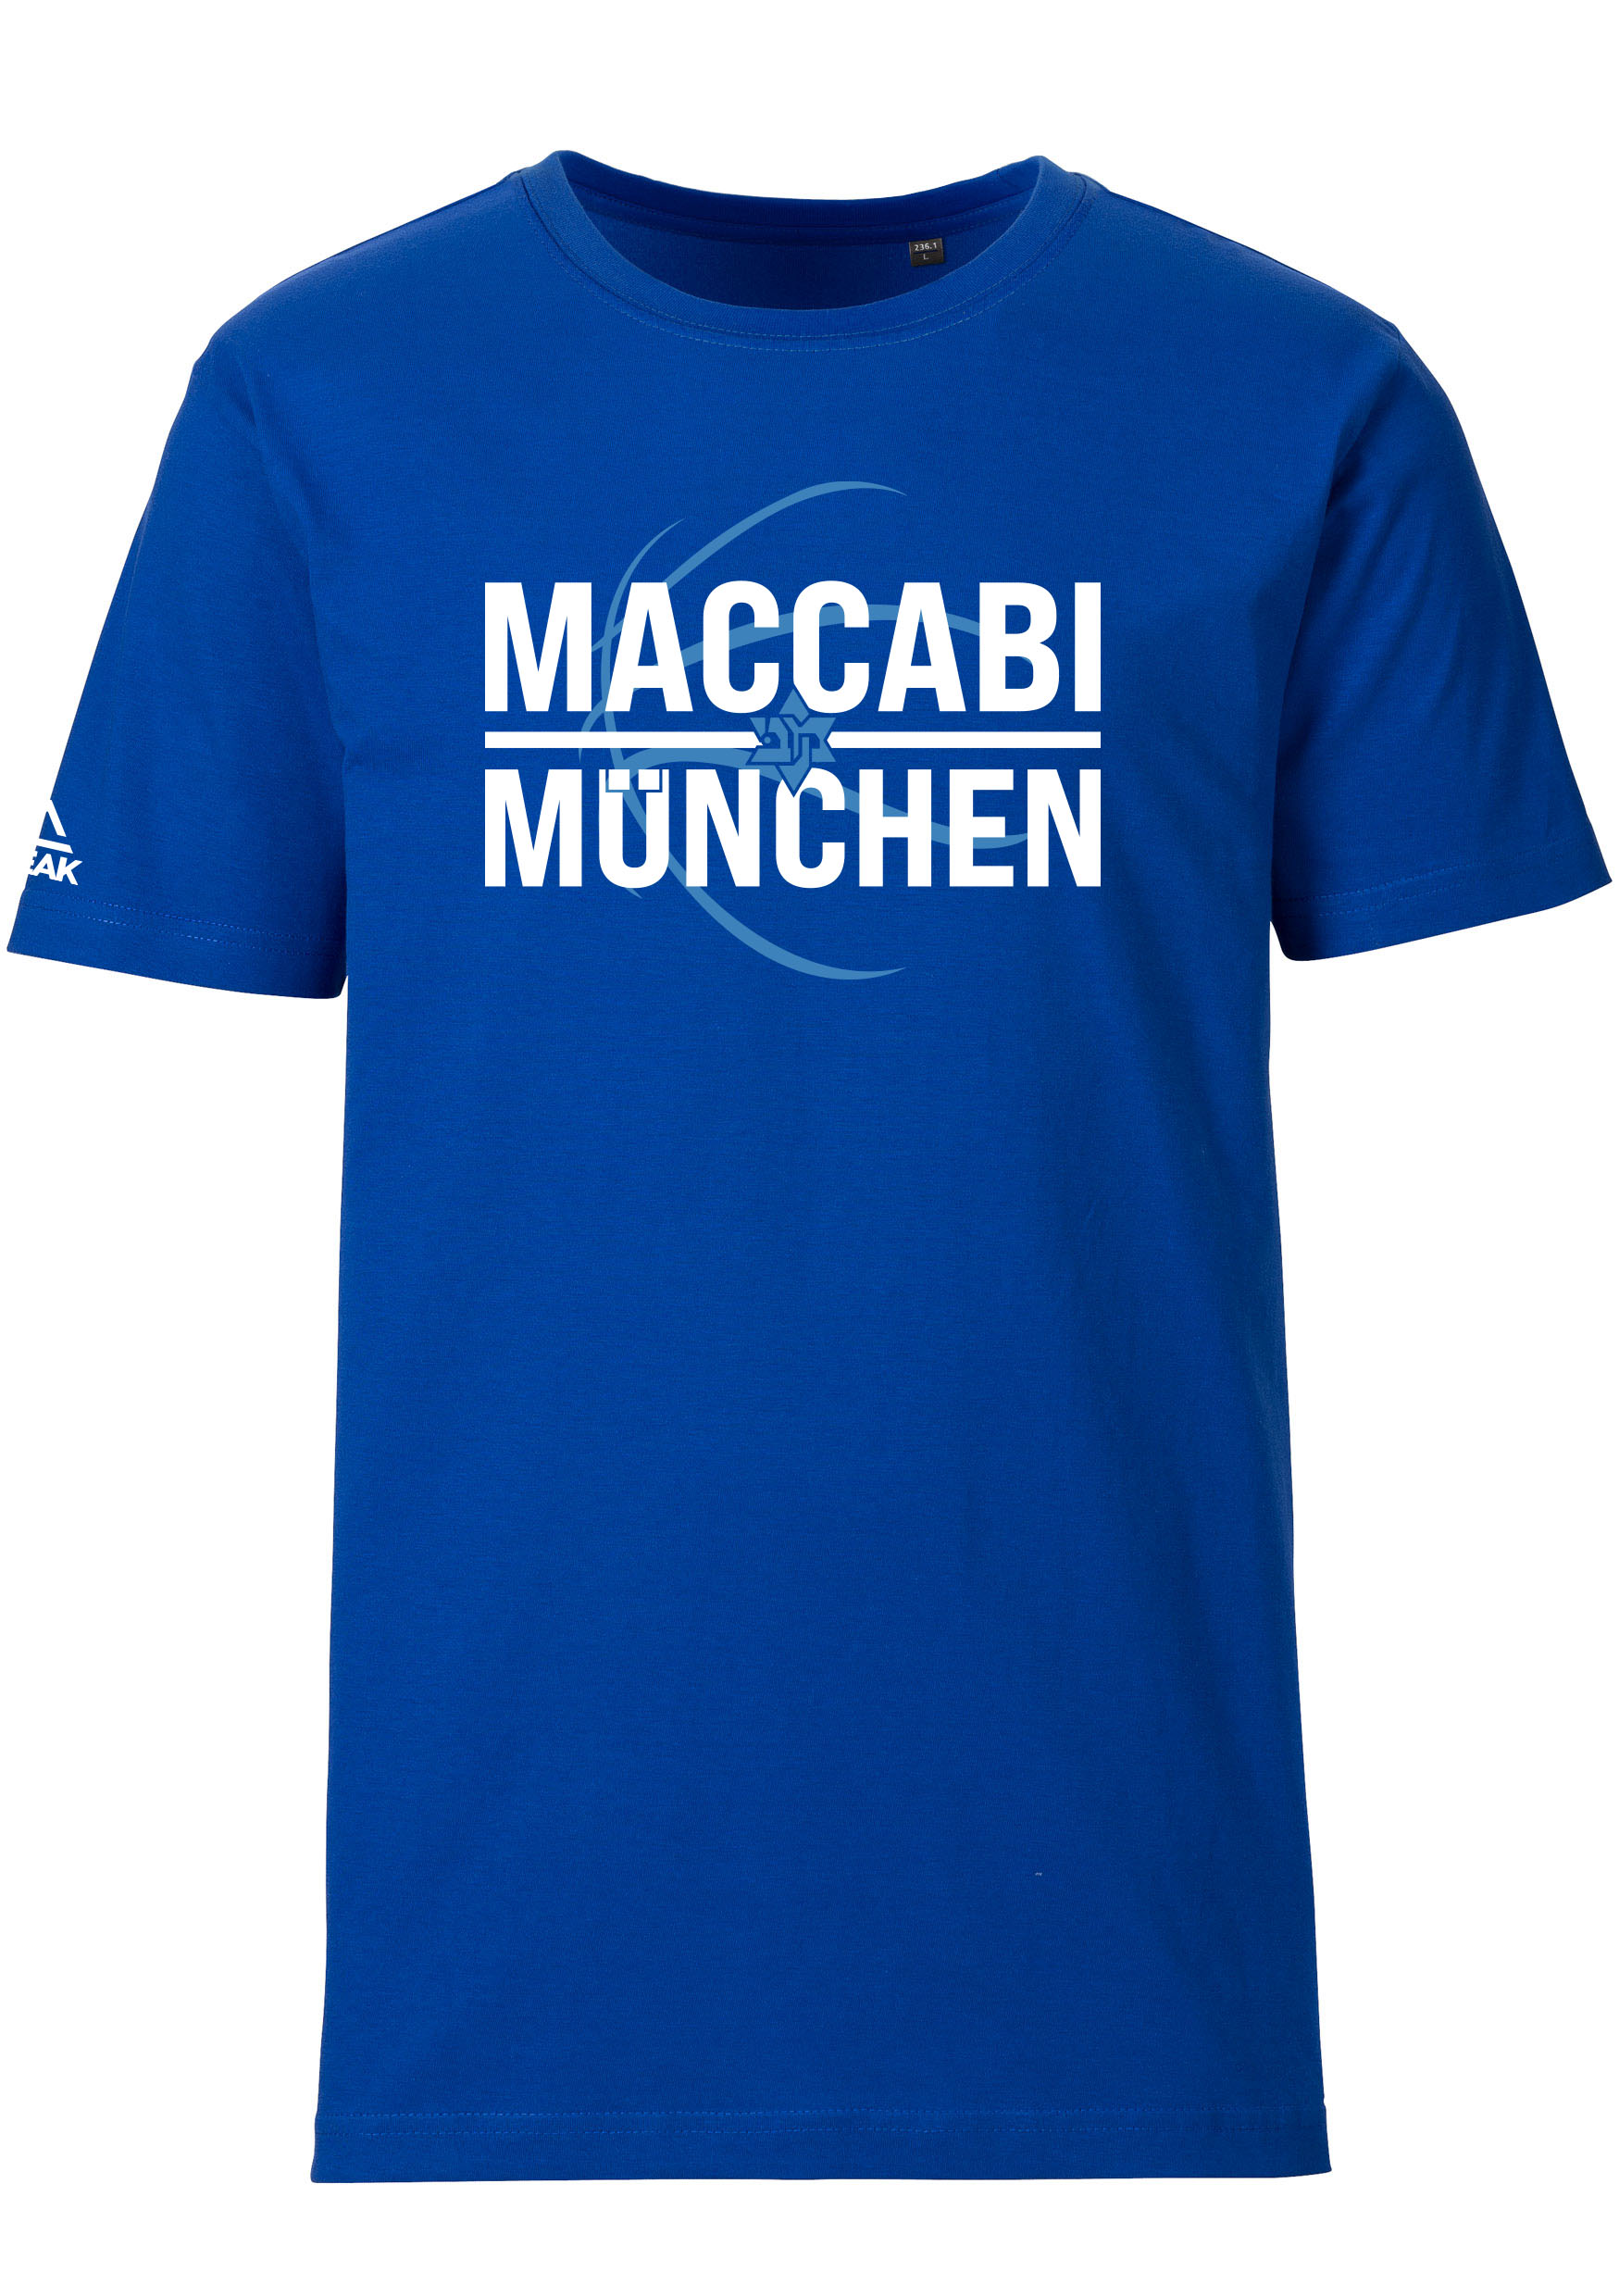 Maccabi München T-Shirt blau